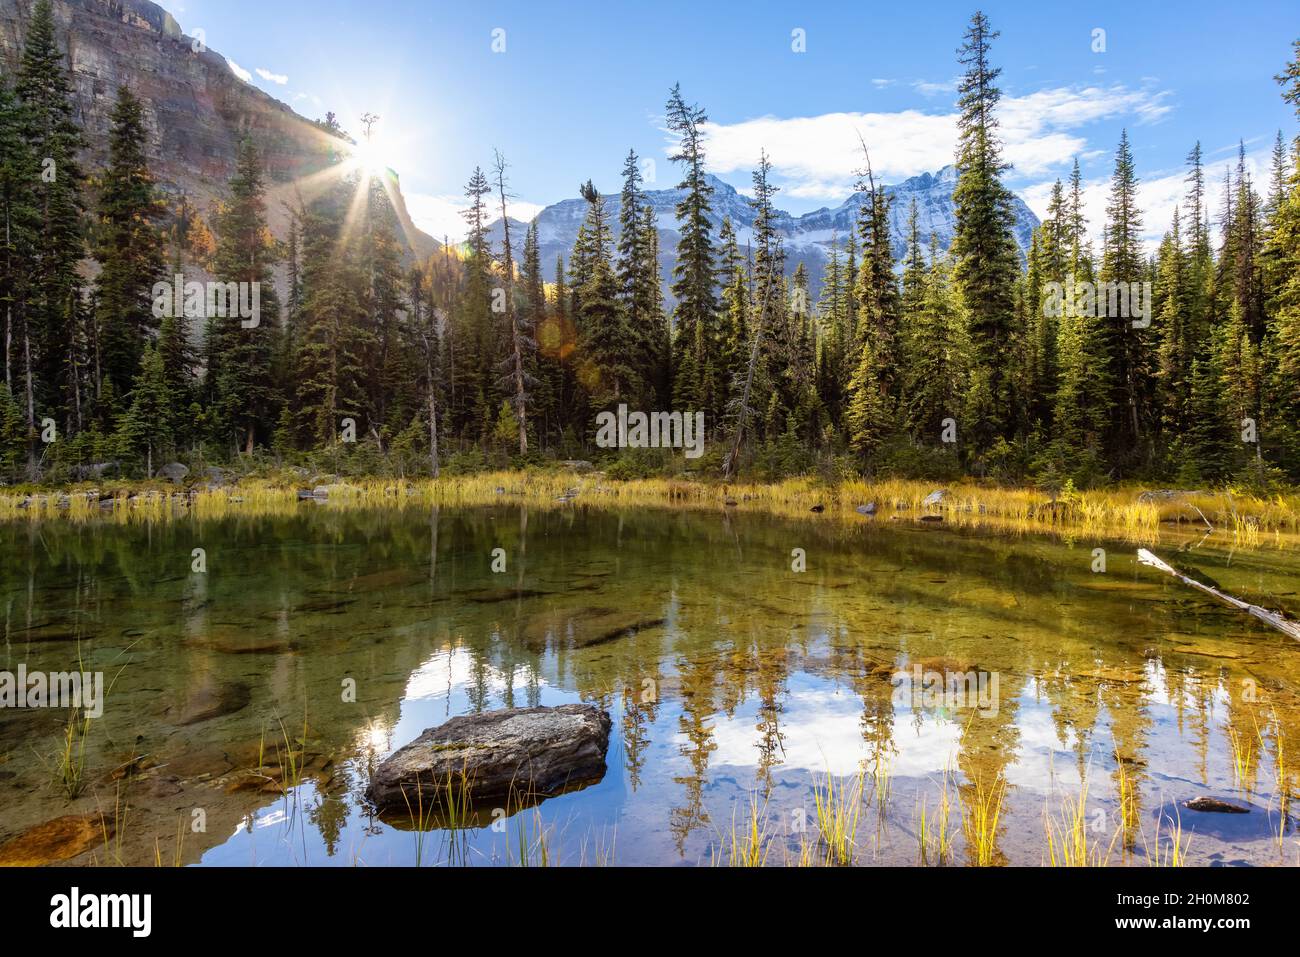 Landschaftlich schöner Blick auf den Glacier Lake mit den kanadischen Rocky Mountains im Hintergrund. Stockfoto